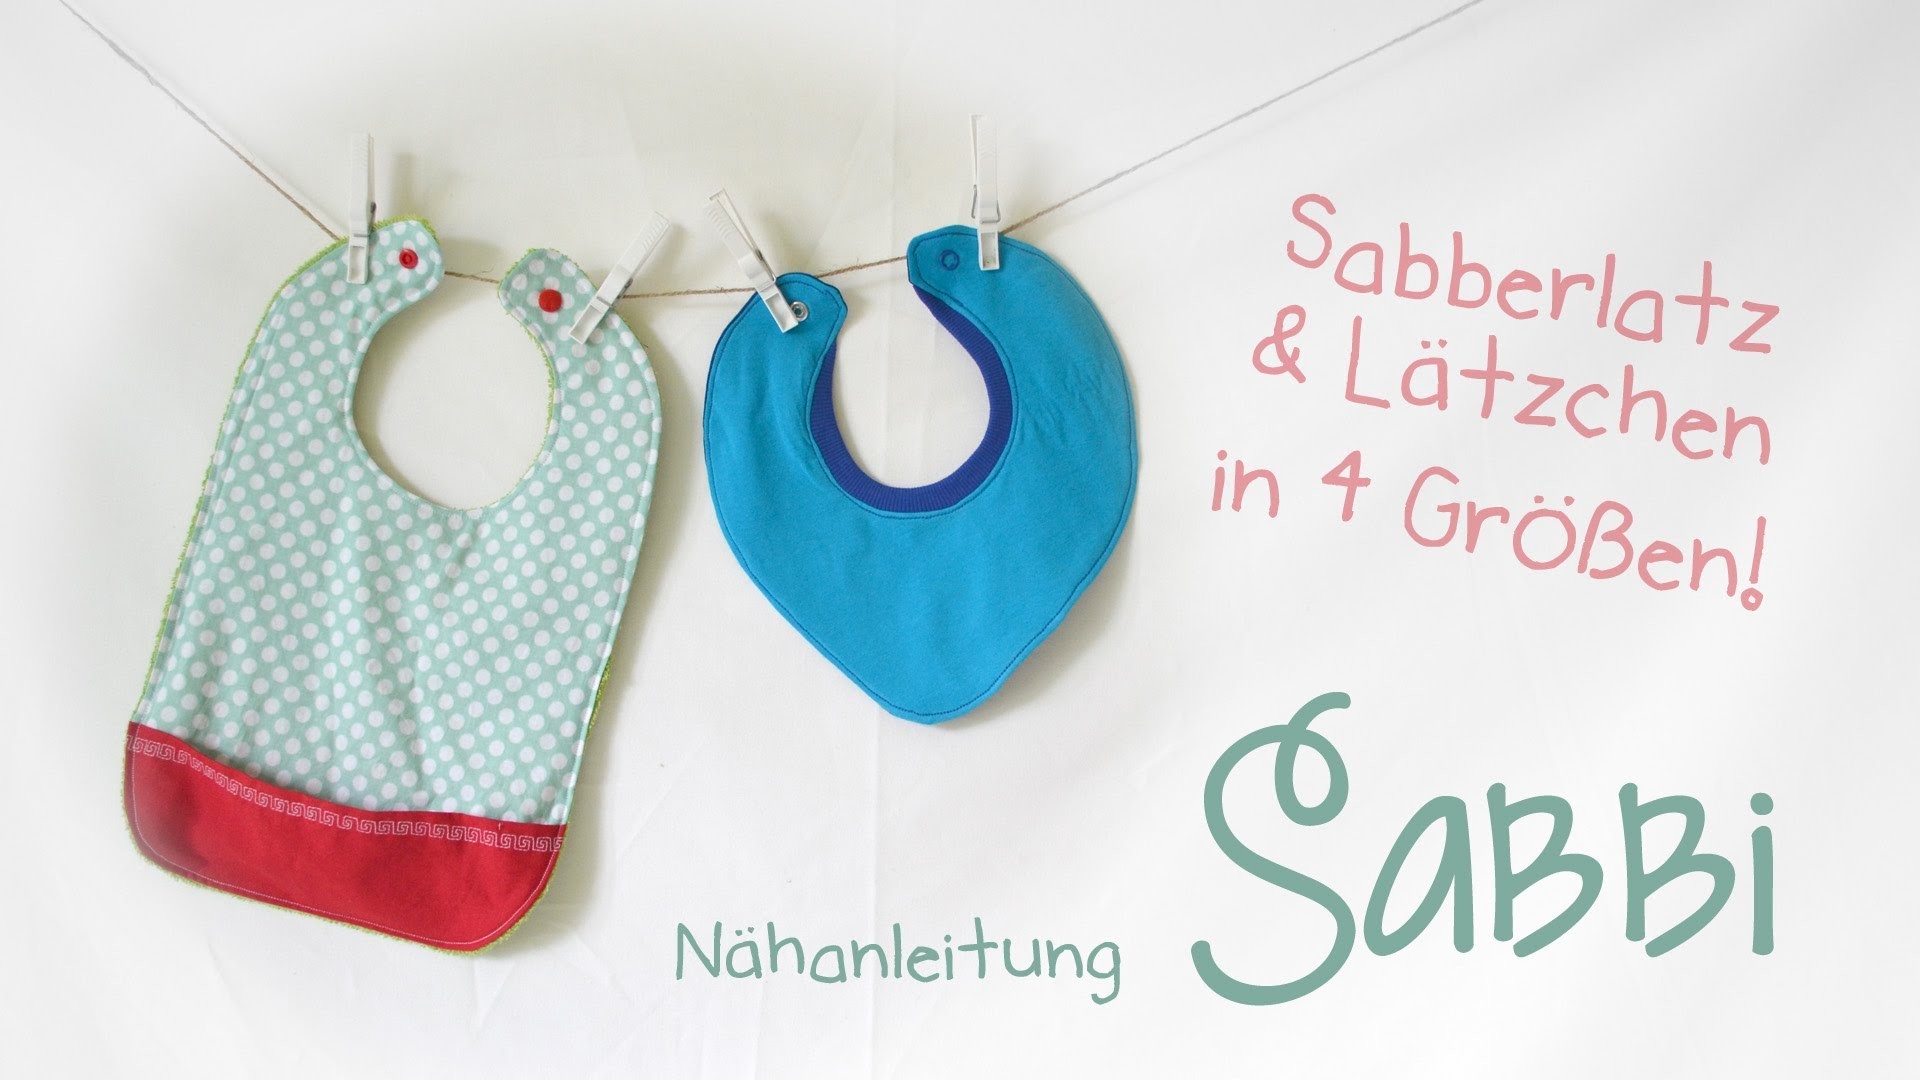 Nähanleitung "Sabbi" - Sabberlätzchen und Lätzchen mit Tasche